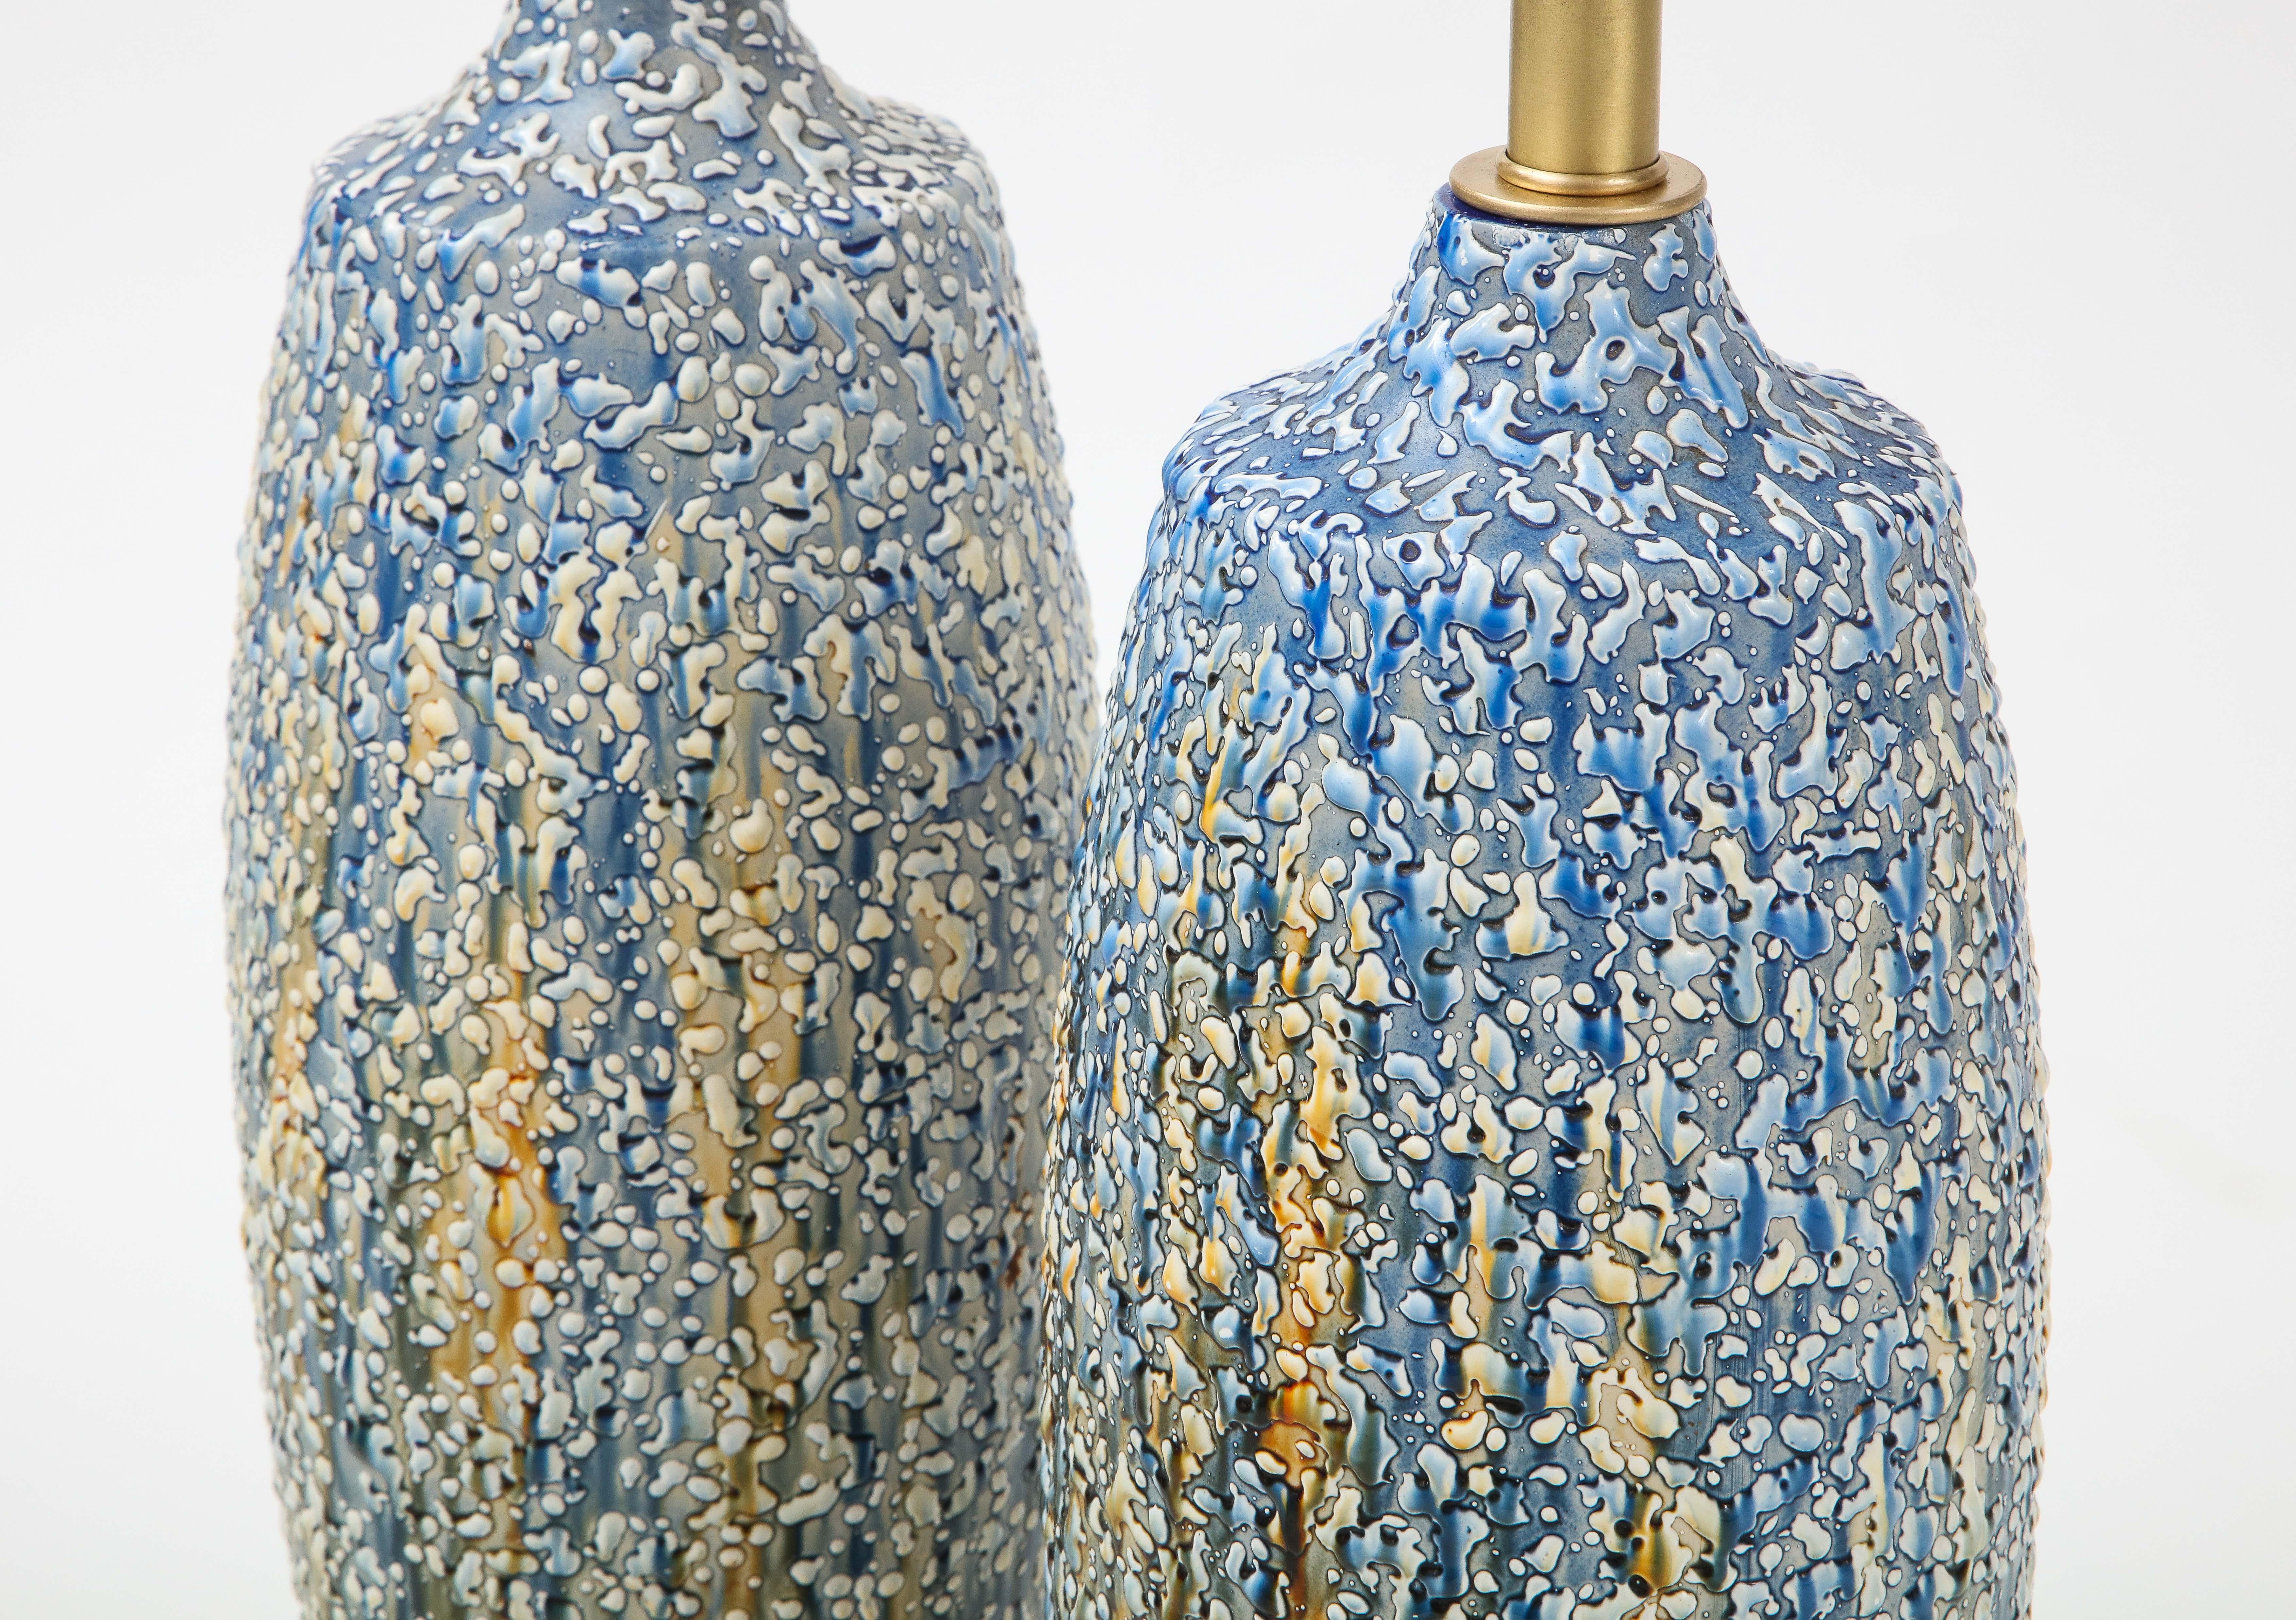 Blue, Polychrome Bubble Glazed Porcelain Lamps 2